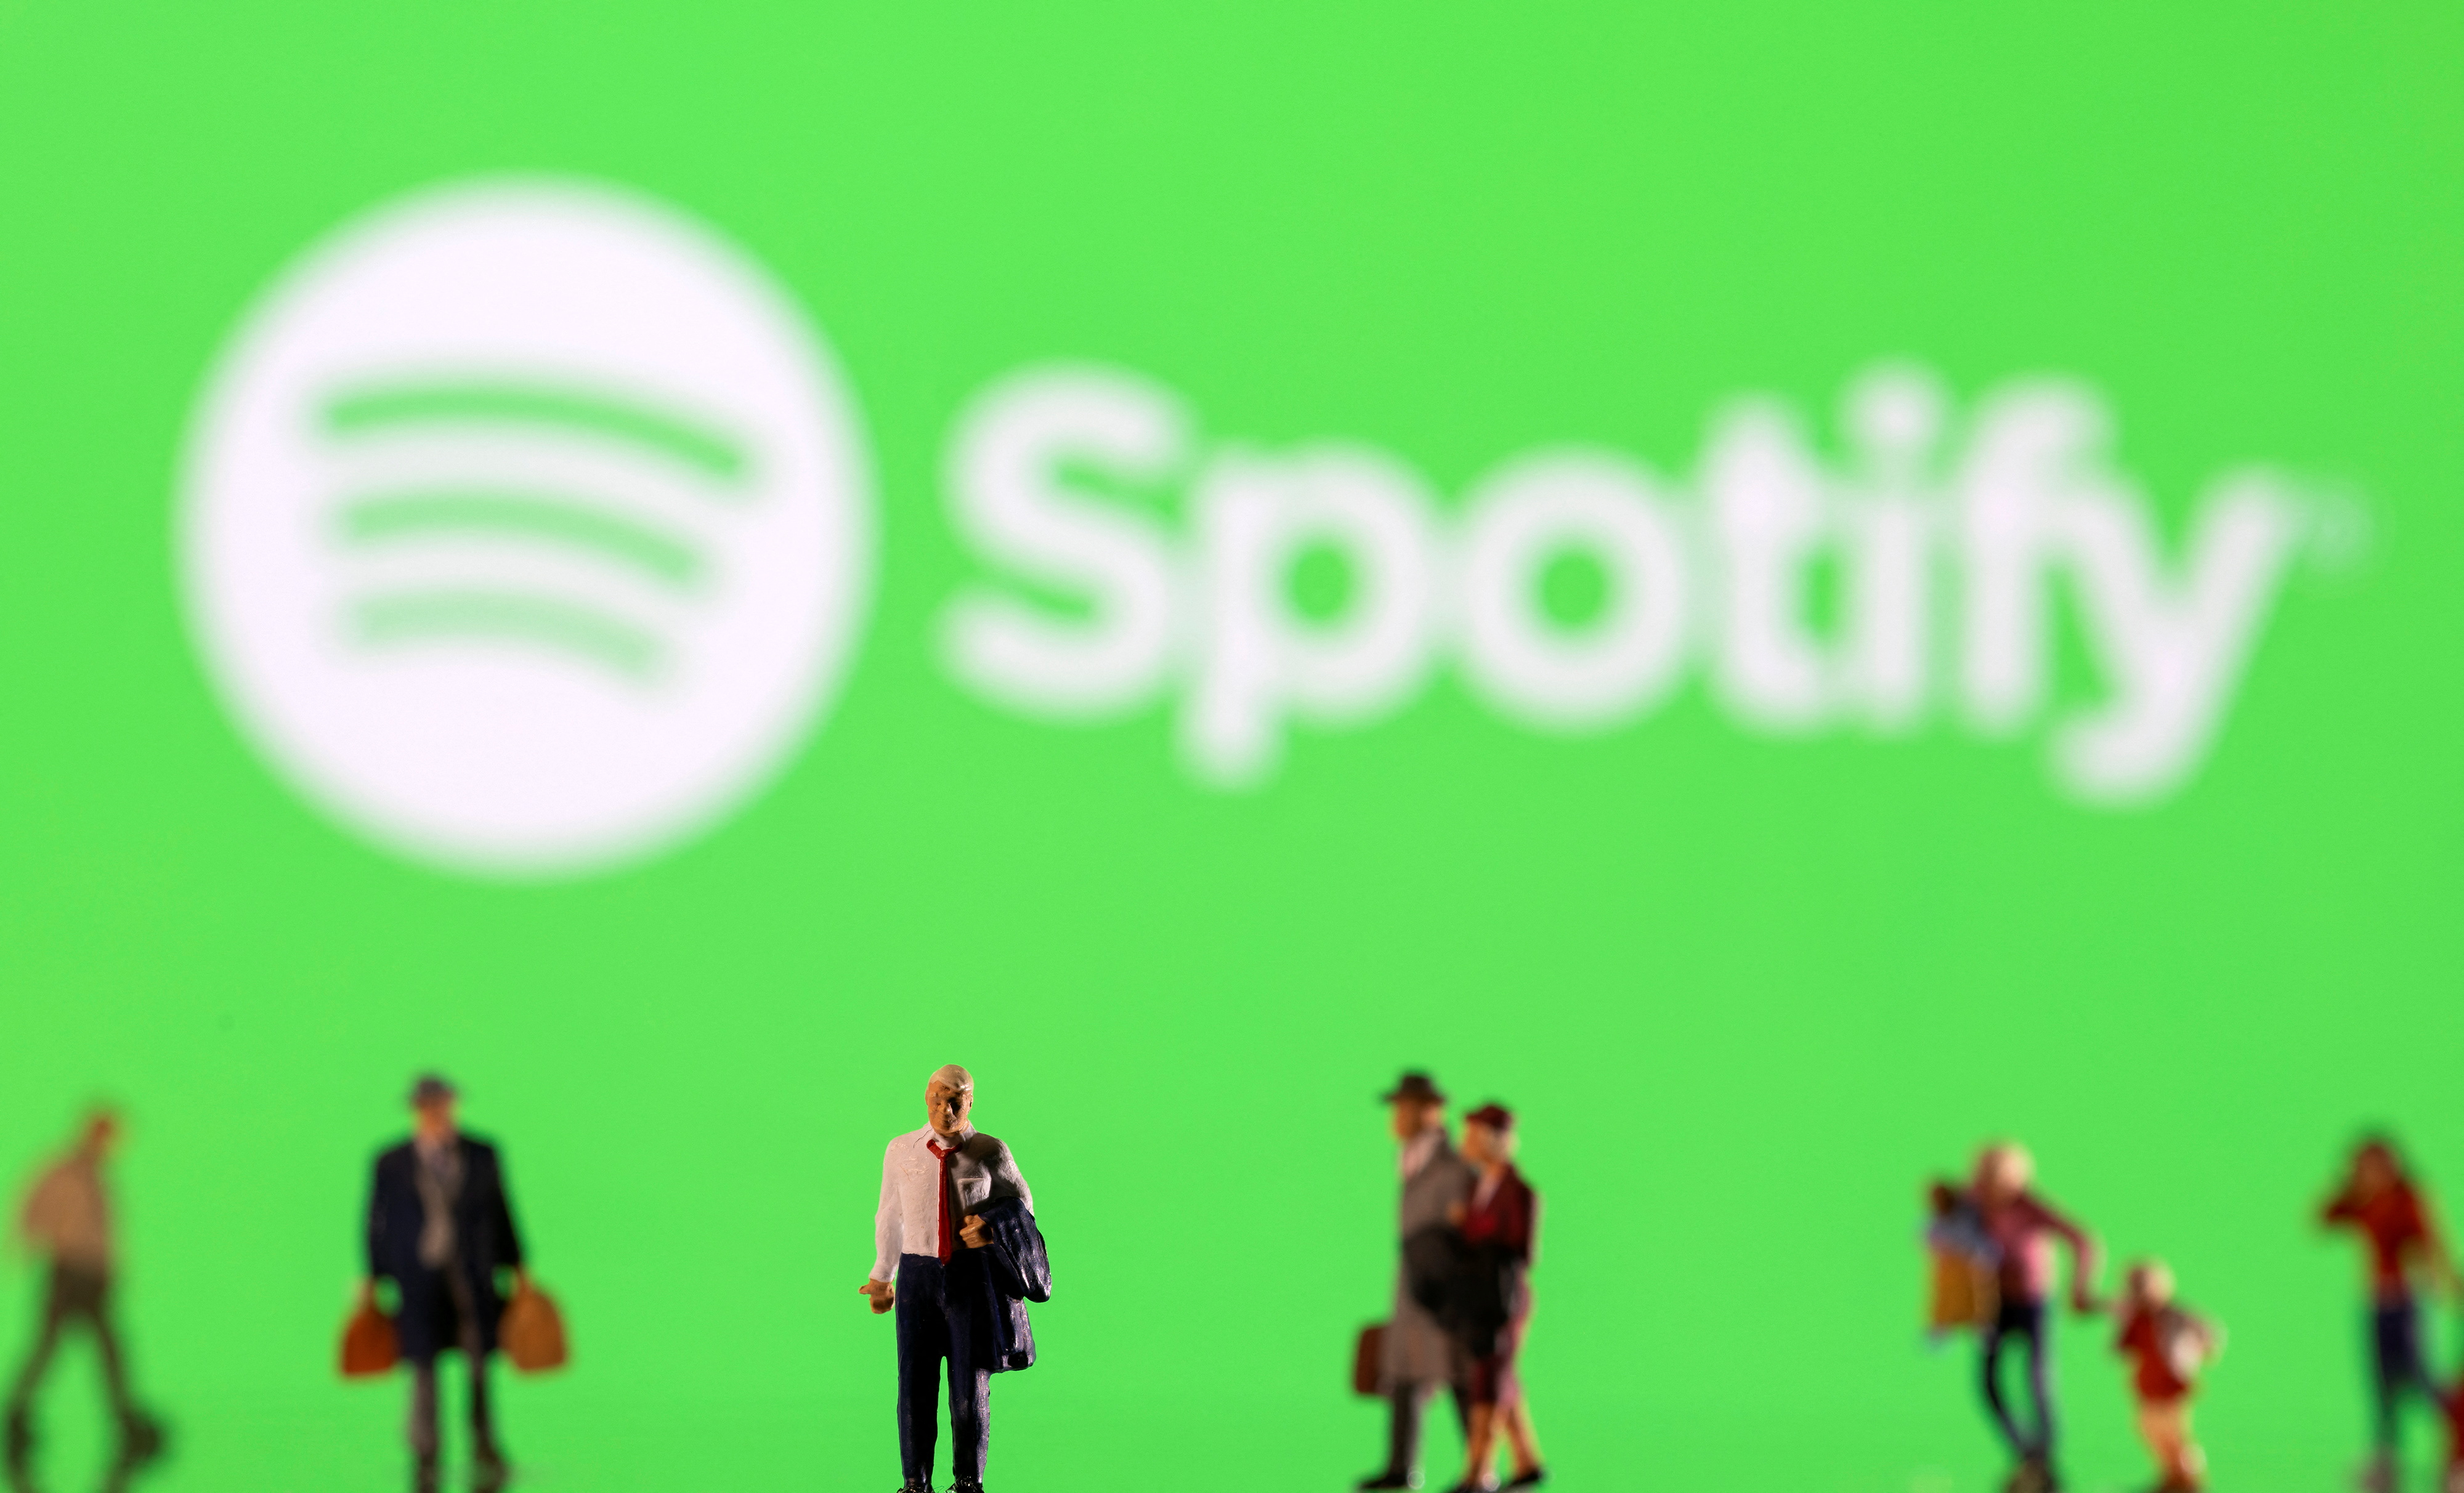 De afbeelding toont kleine beeldjes en het weergegeven Spotify-logo